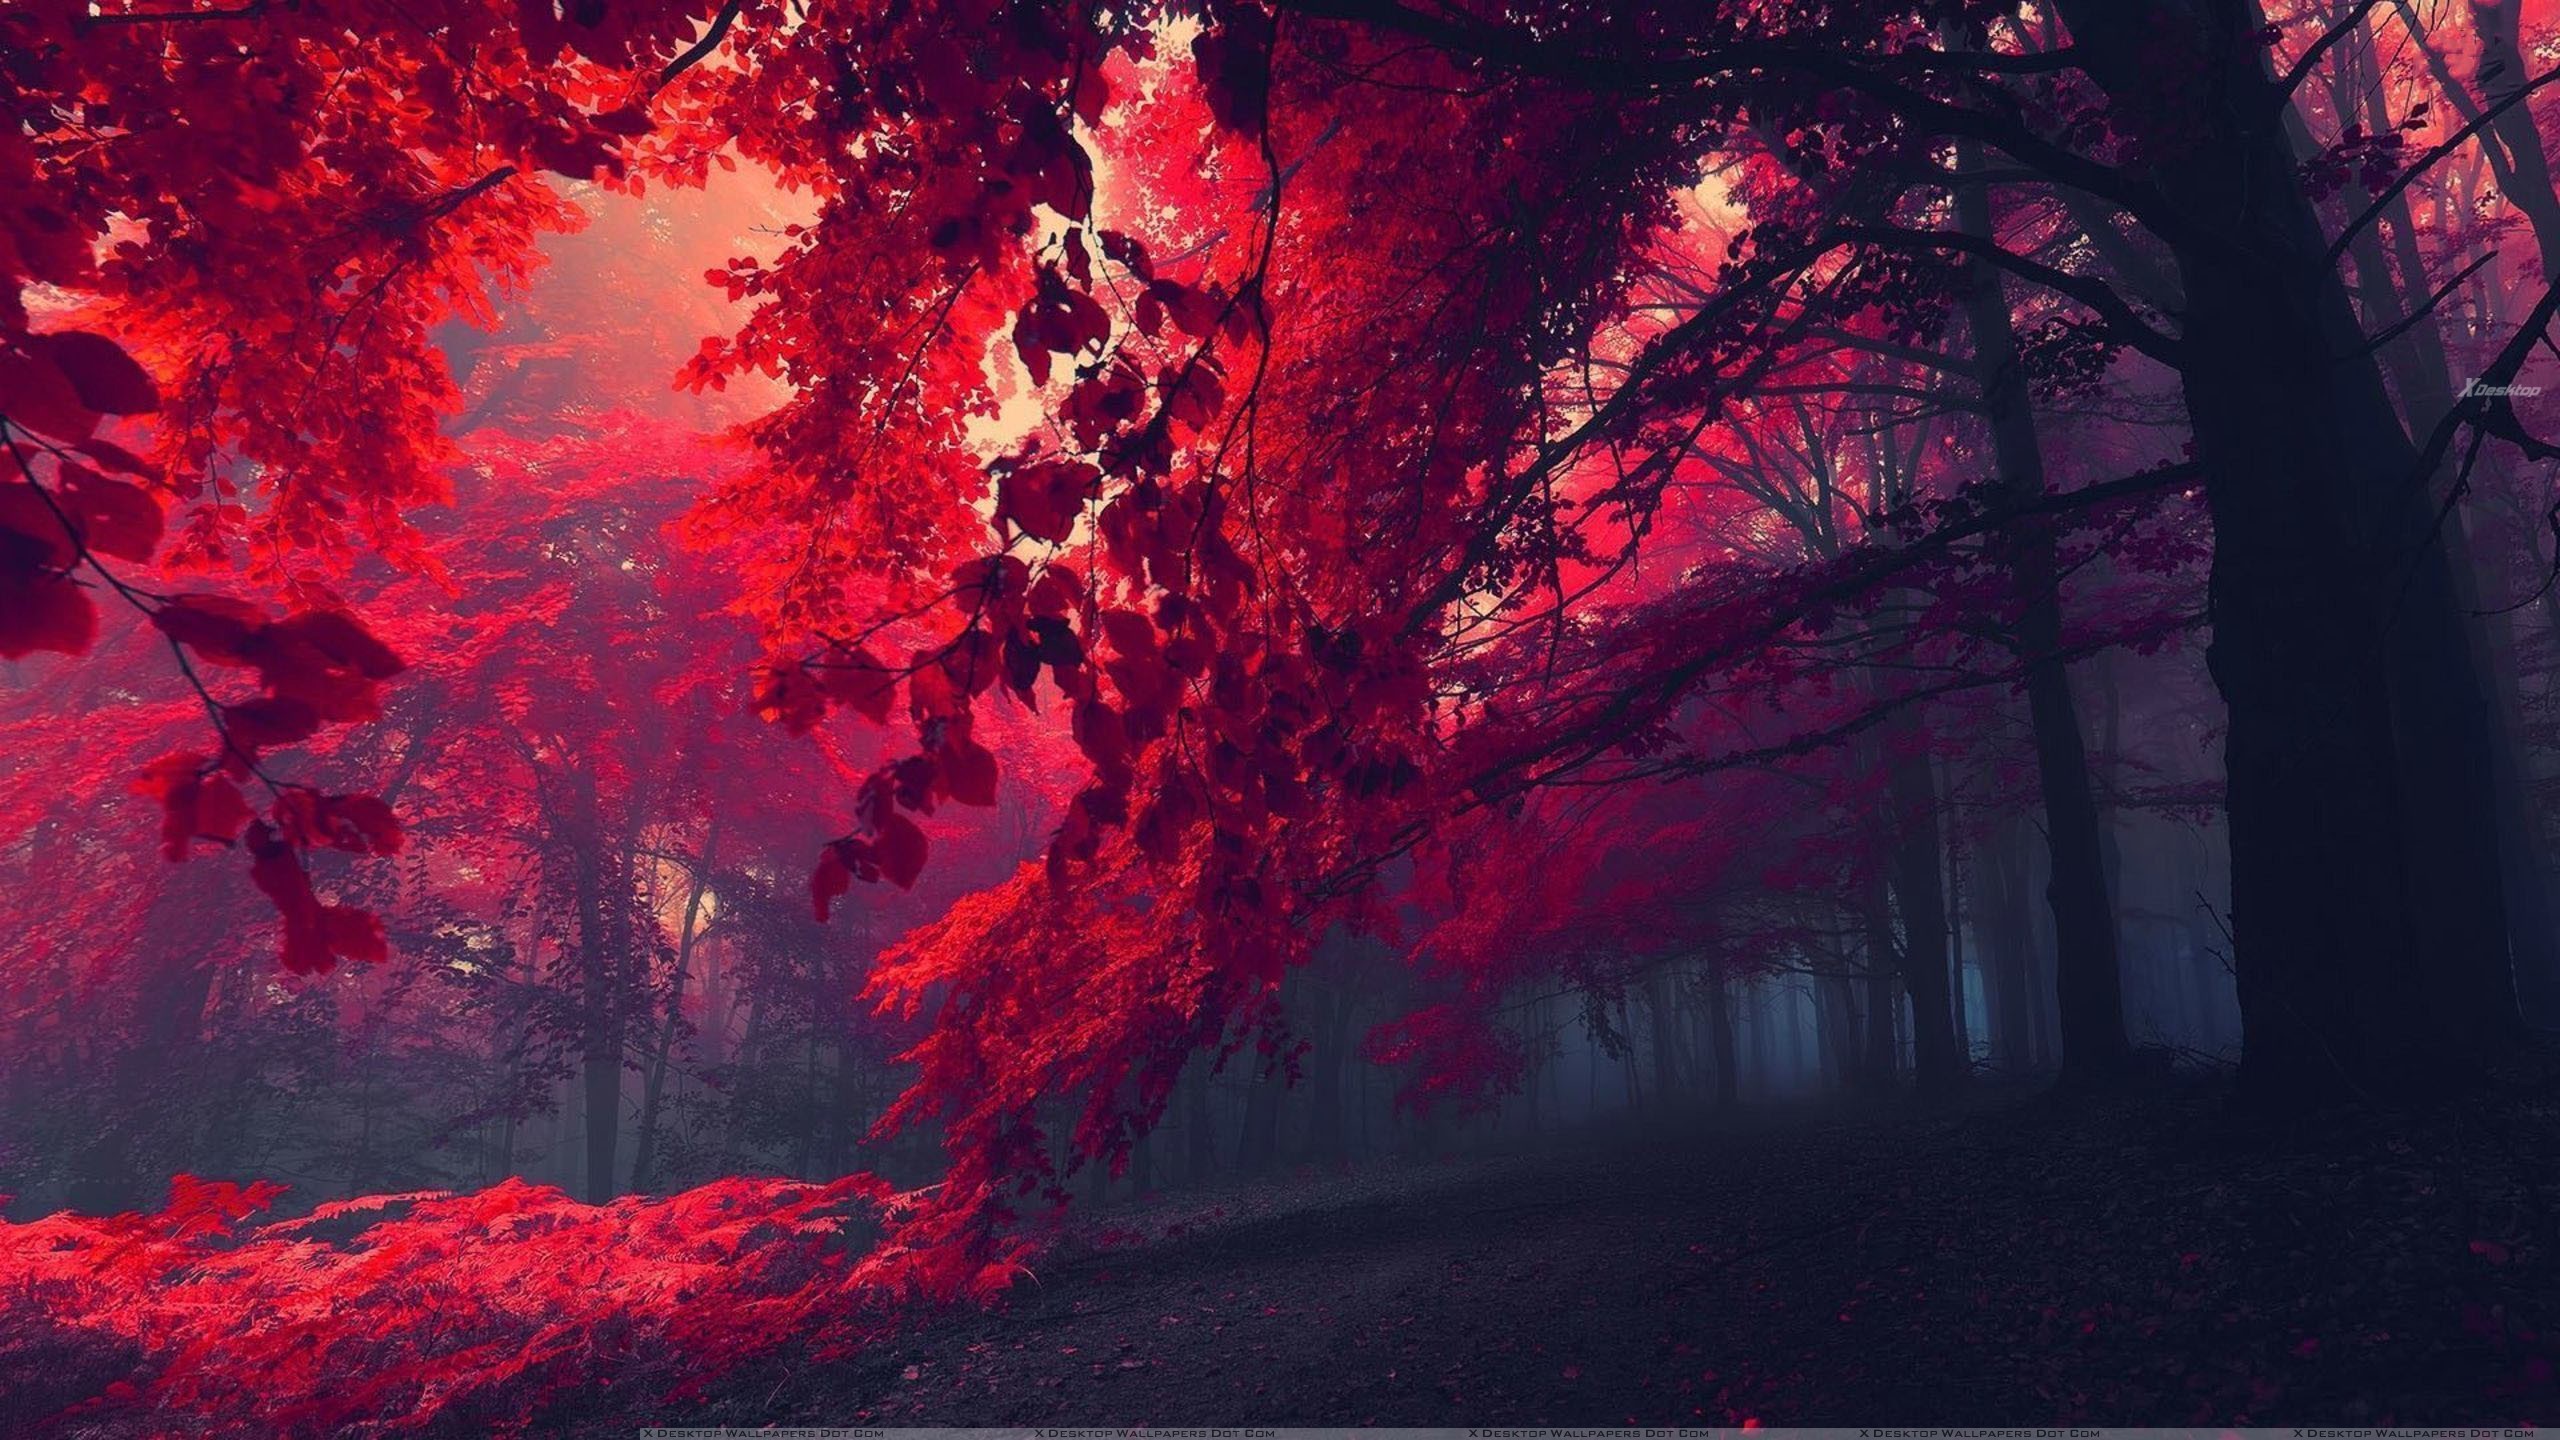 Red forest Nature desktop wallpaper, Forest wallpaper, Tree wallpaper – Nature no